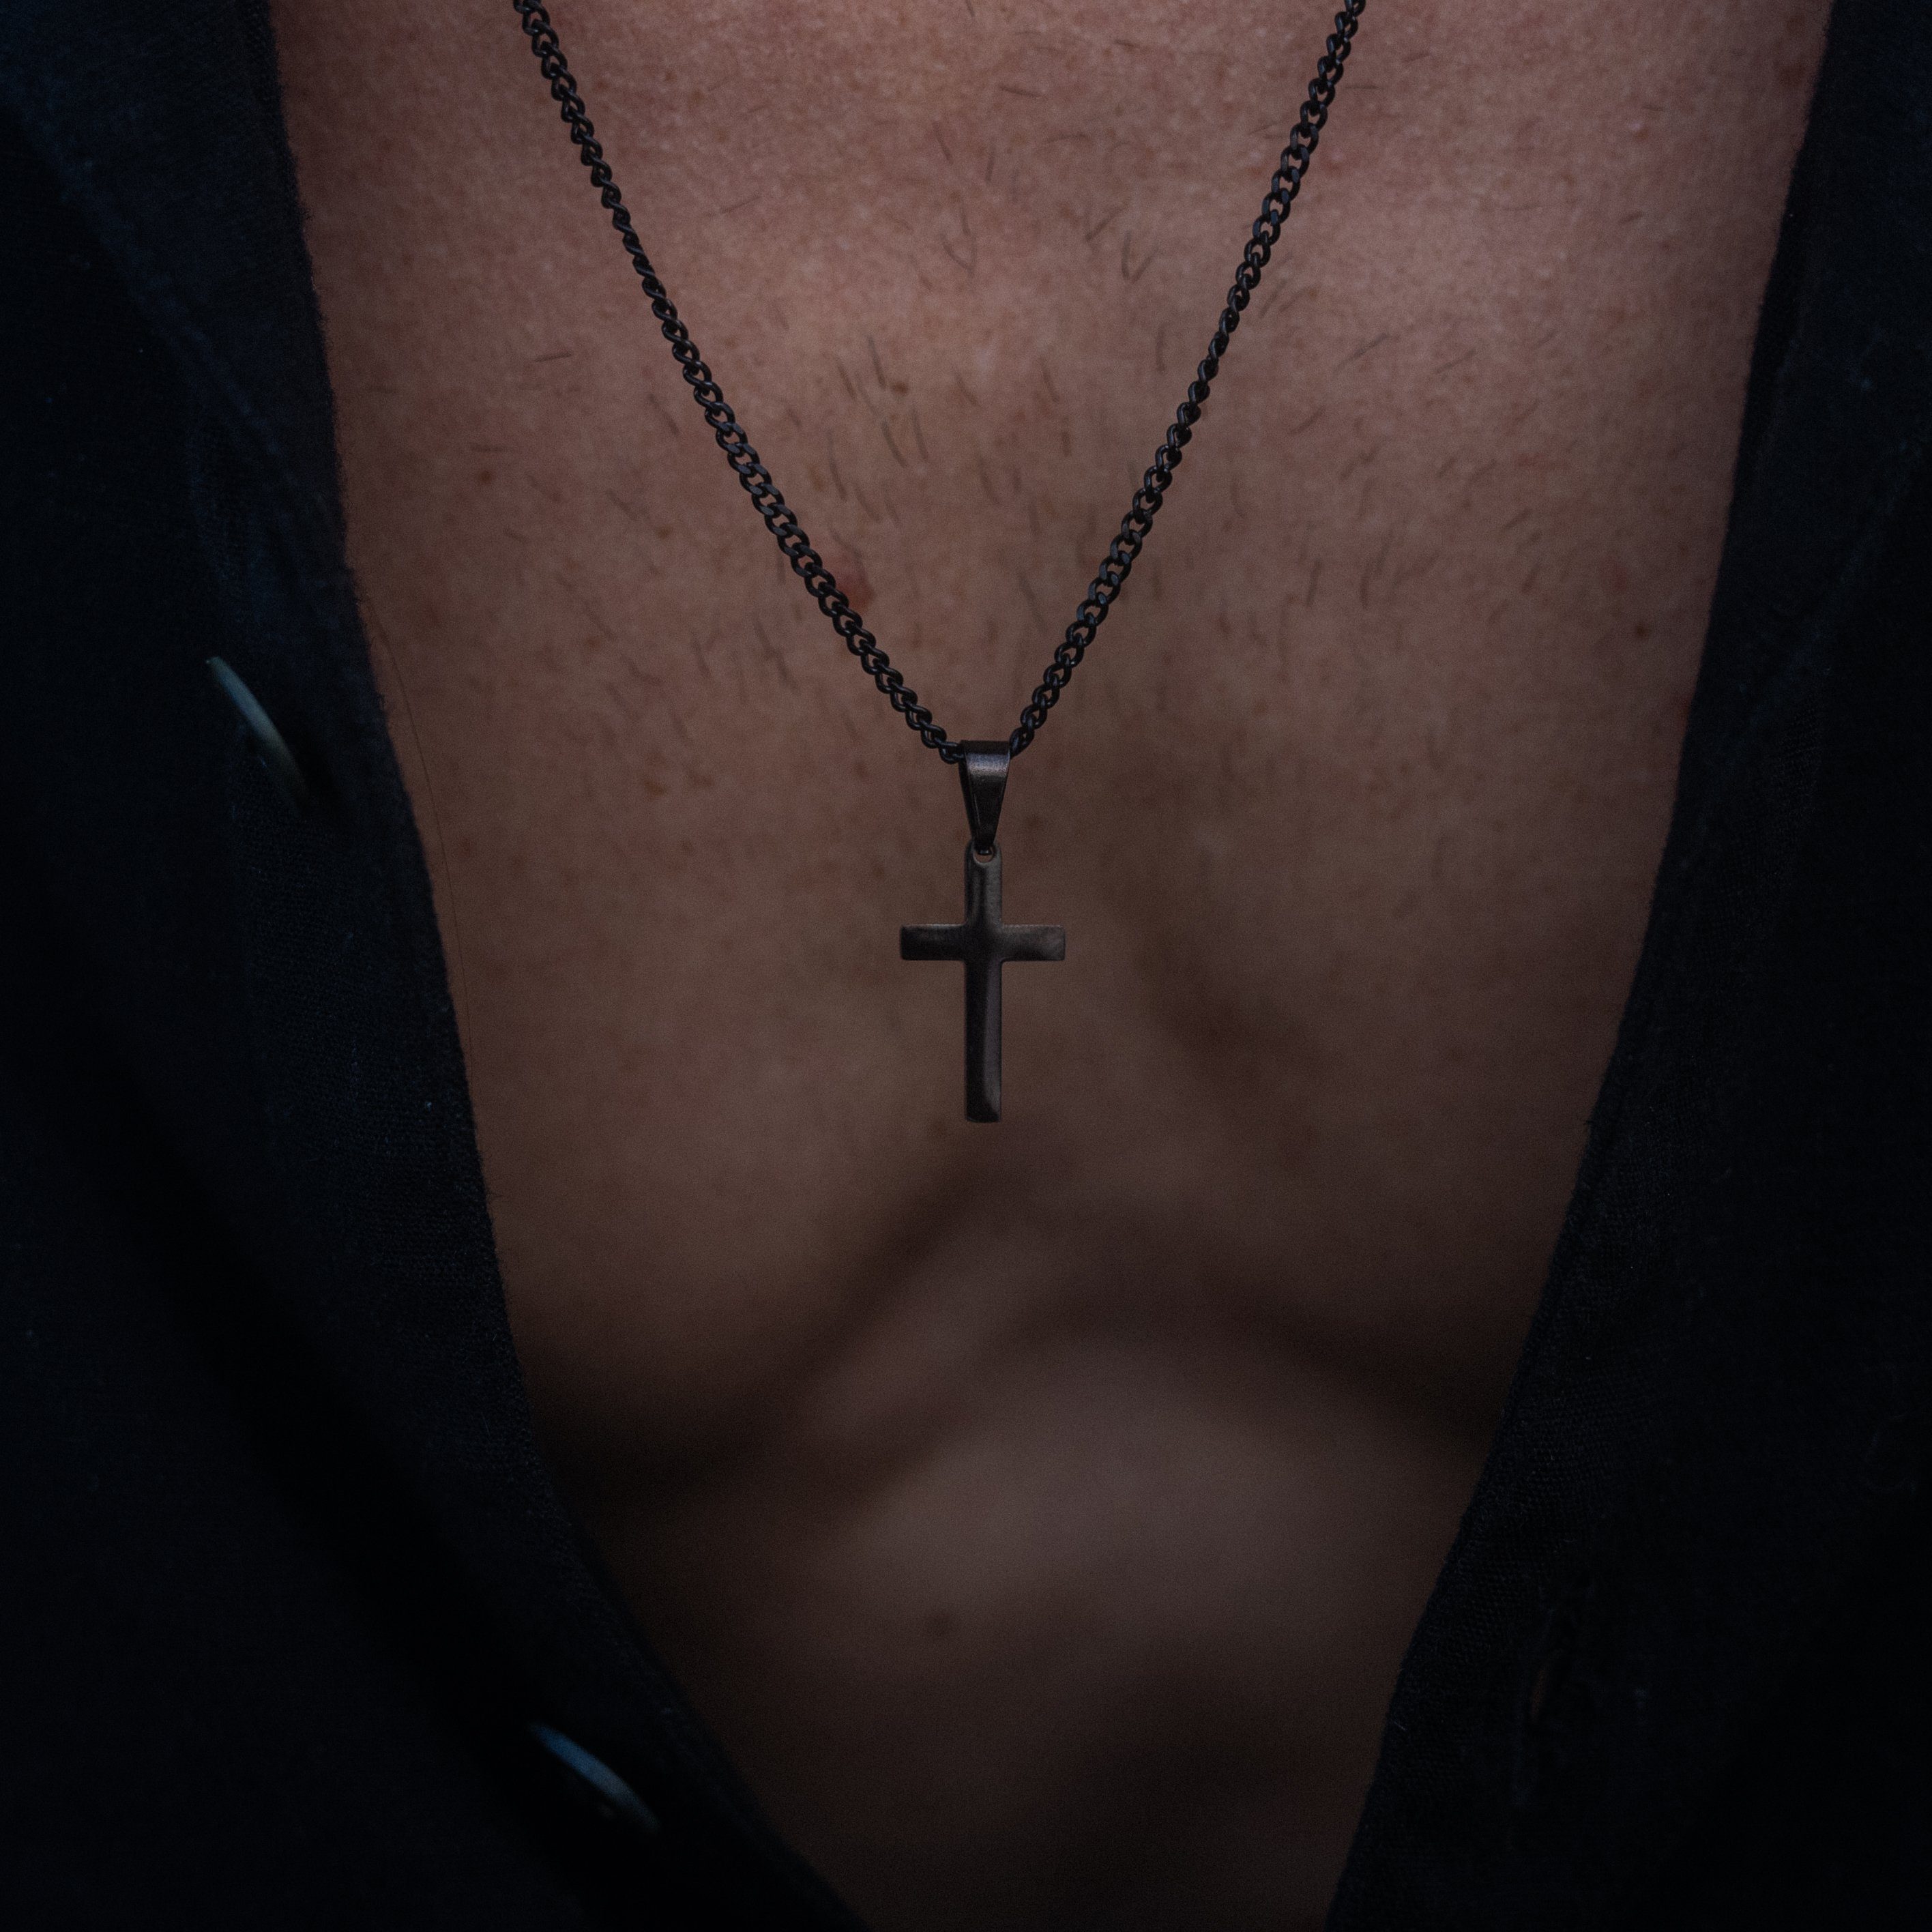 Made by Nami Anhänger Edelstahl Kreuzkette Herren, mit Schwarz Gliederkette Halskette Anhänger Kreuz Kette